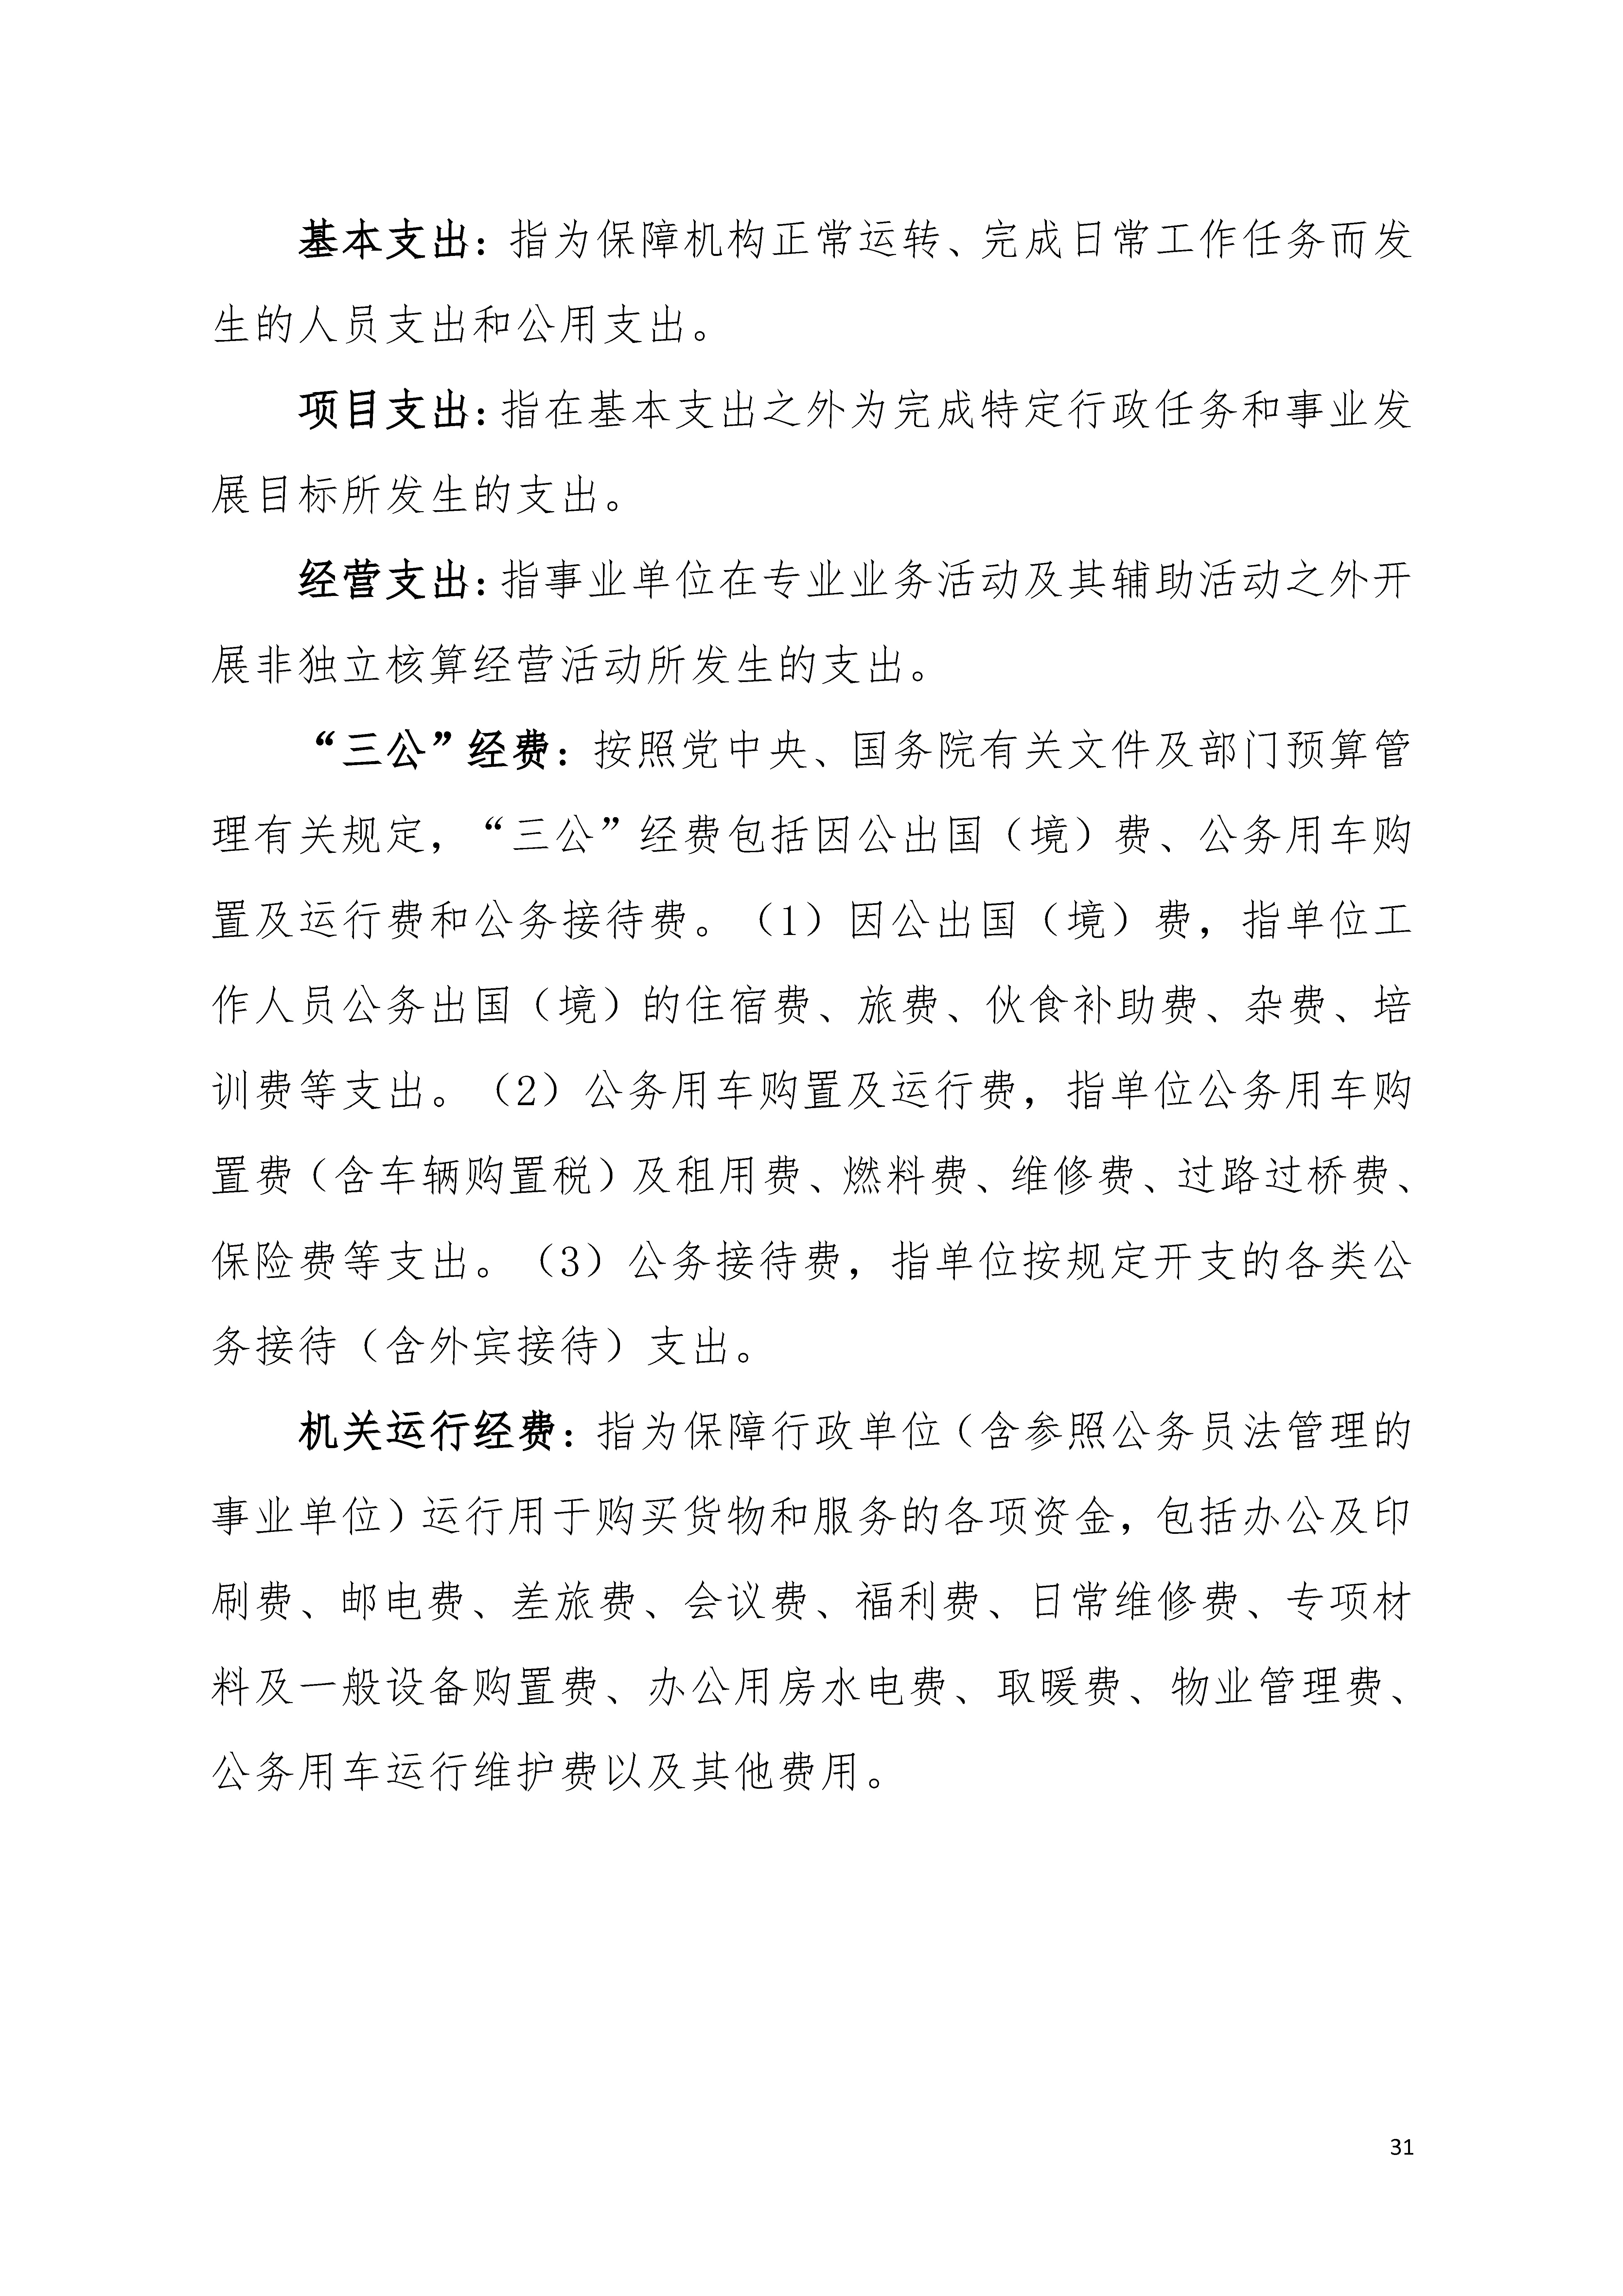 2021年广东省残疾人康复中心部门决算 0629_页面_31.jpg